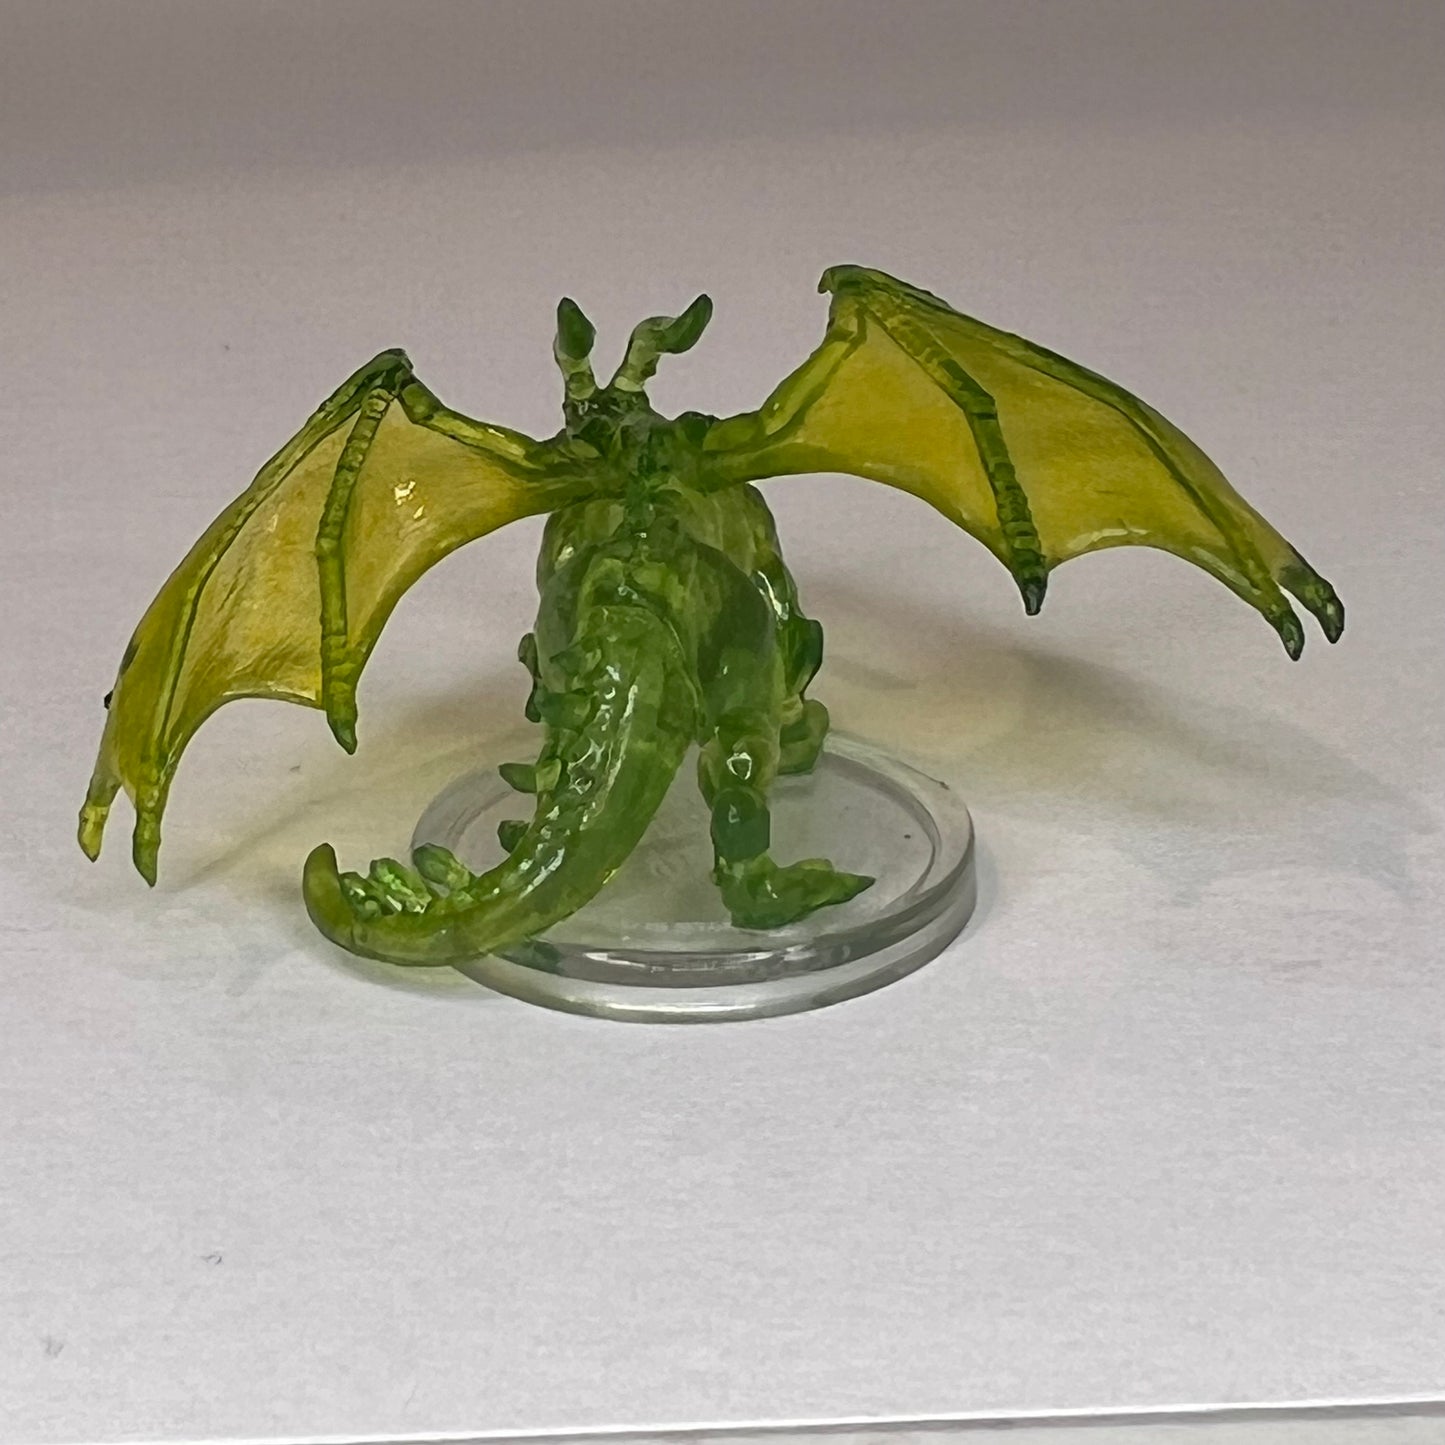 Emerald Dragon Wyrmling - Fizban's Treasury of Dragons 13/46